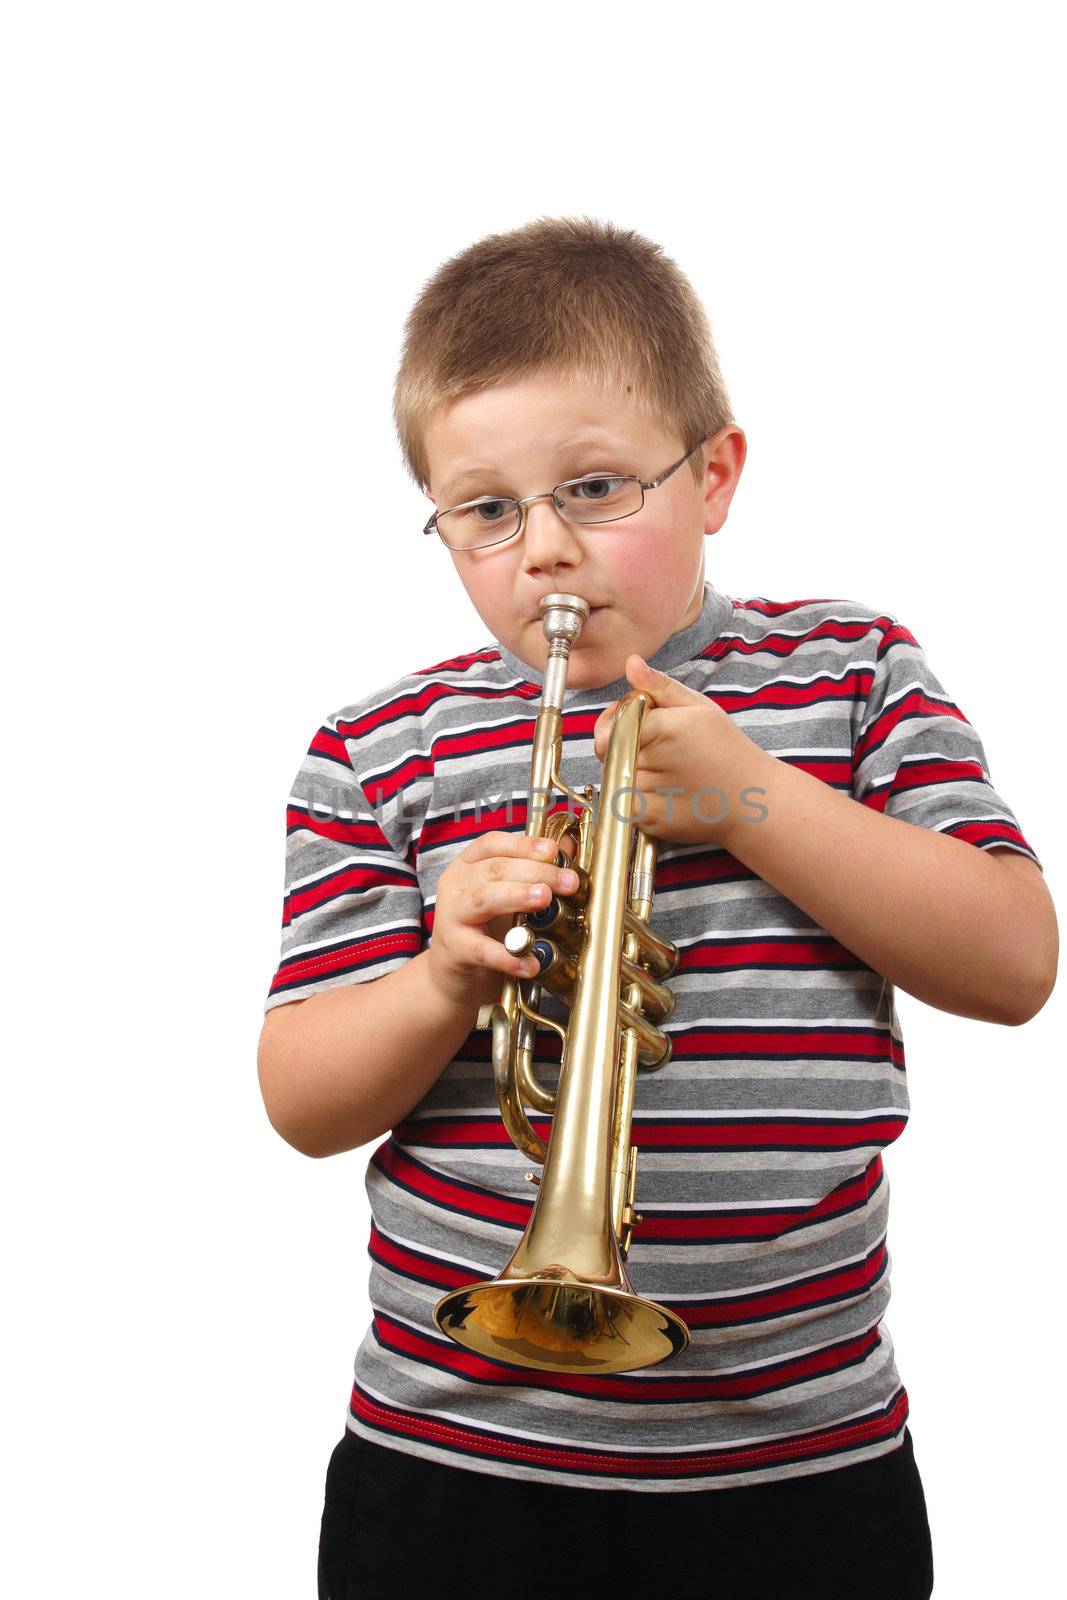 Boy Blowing Trumpet by aguirre_mar